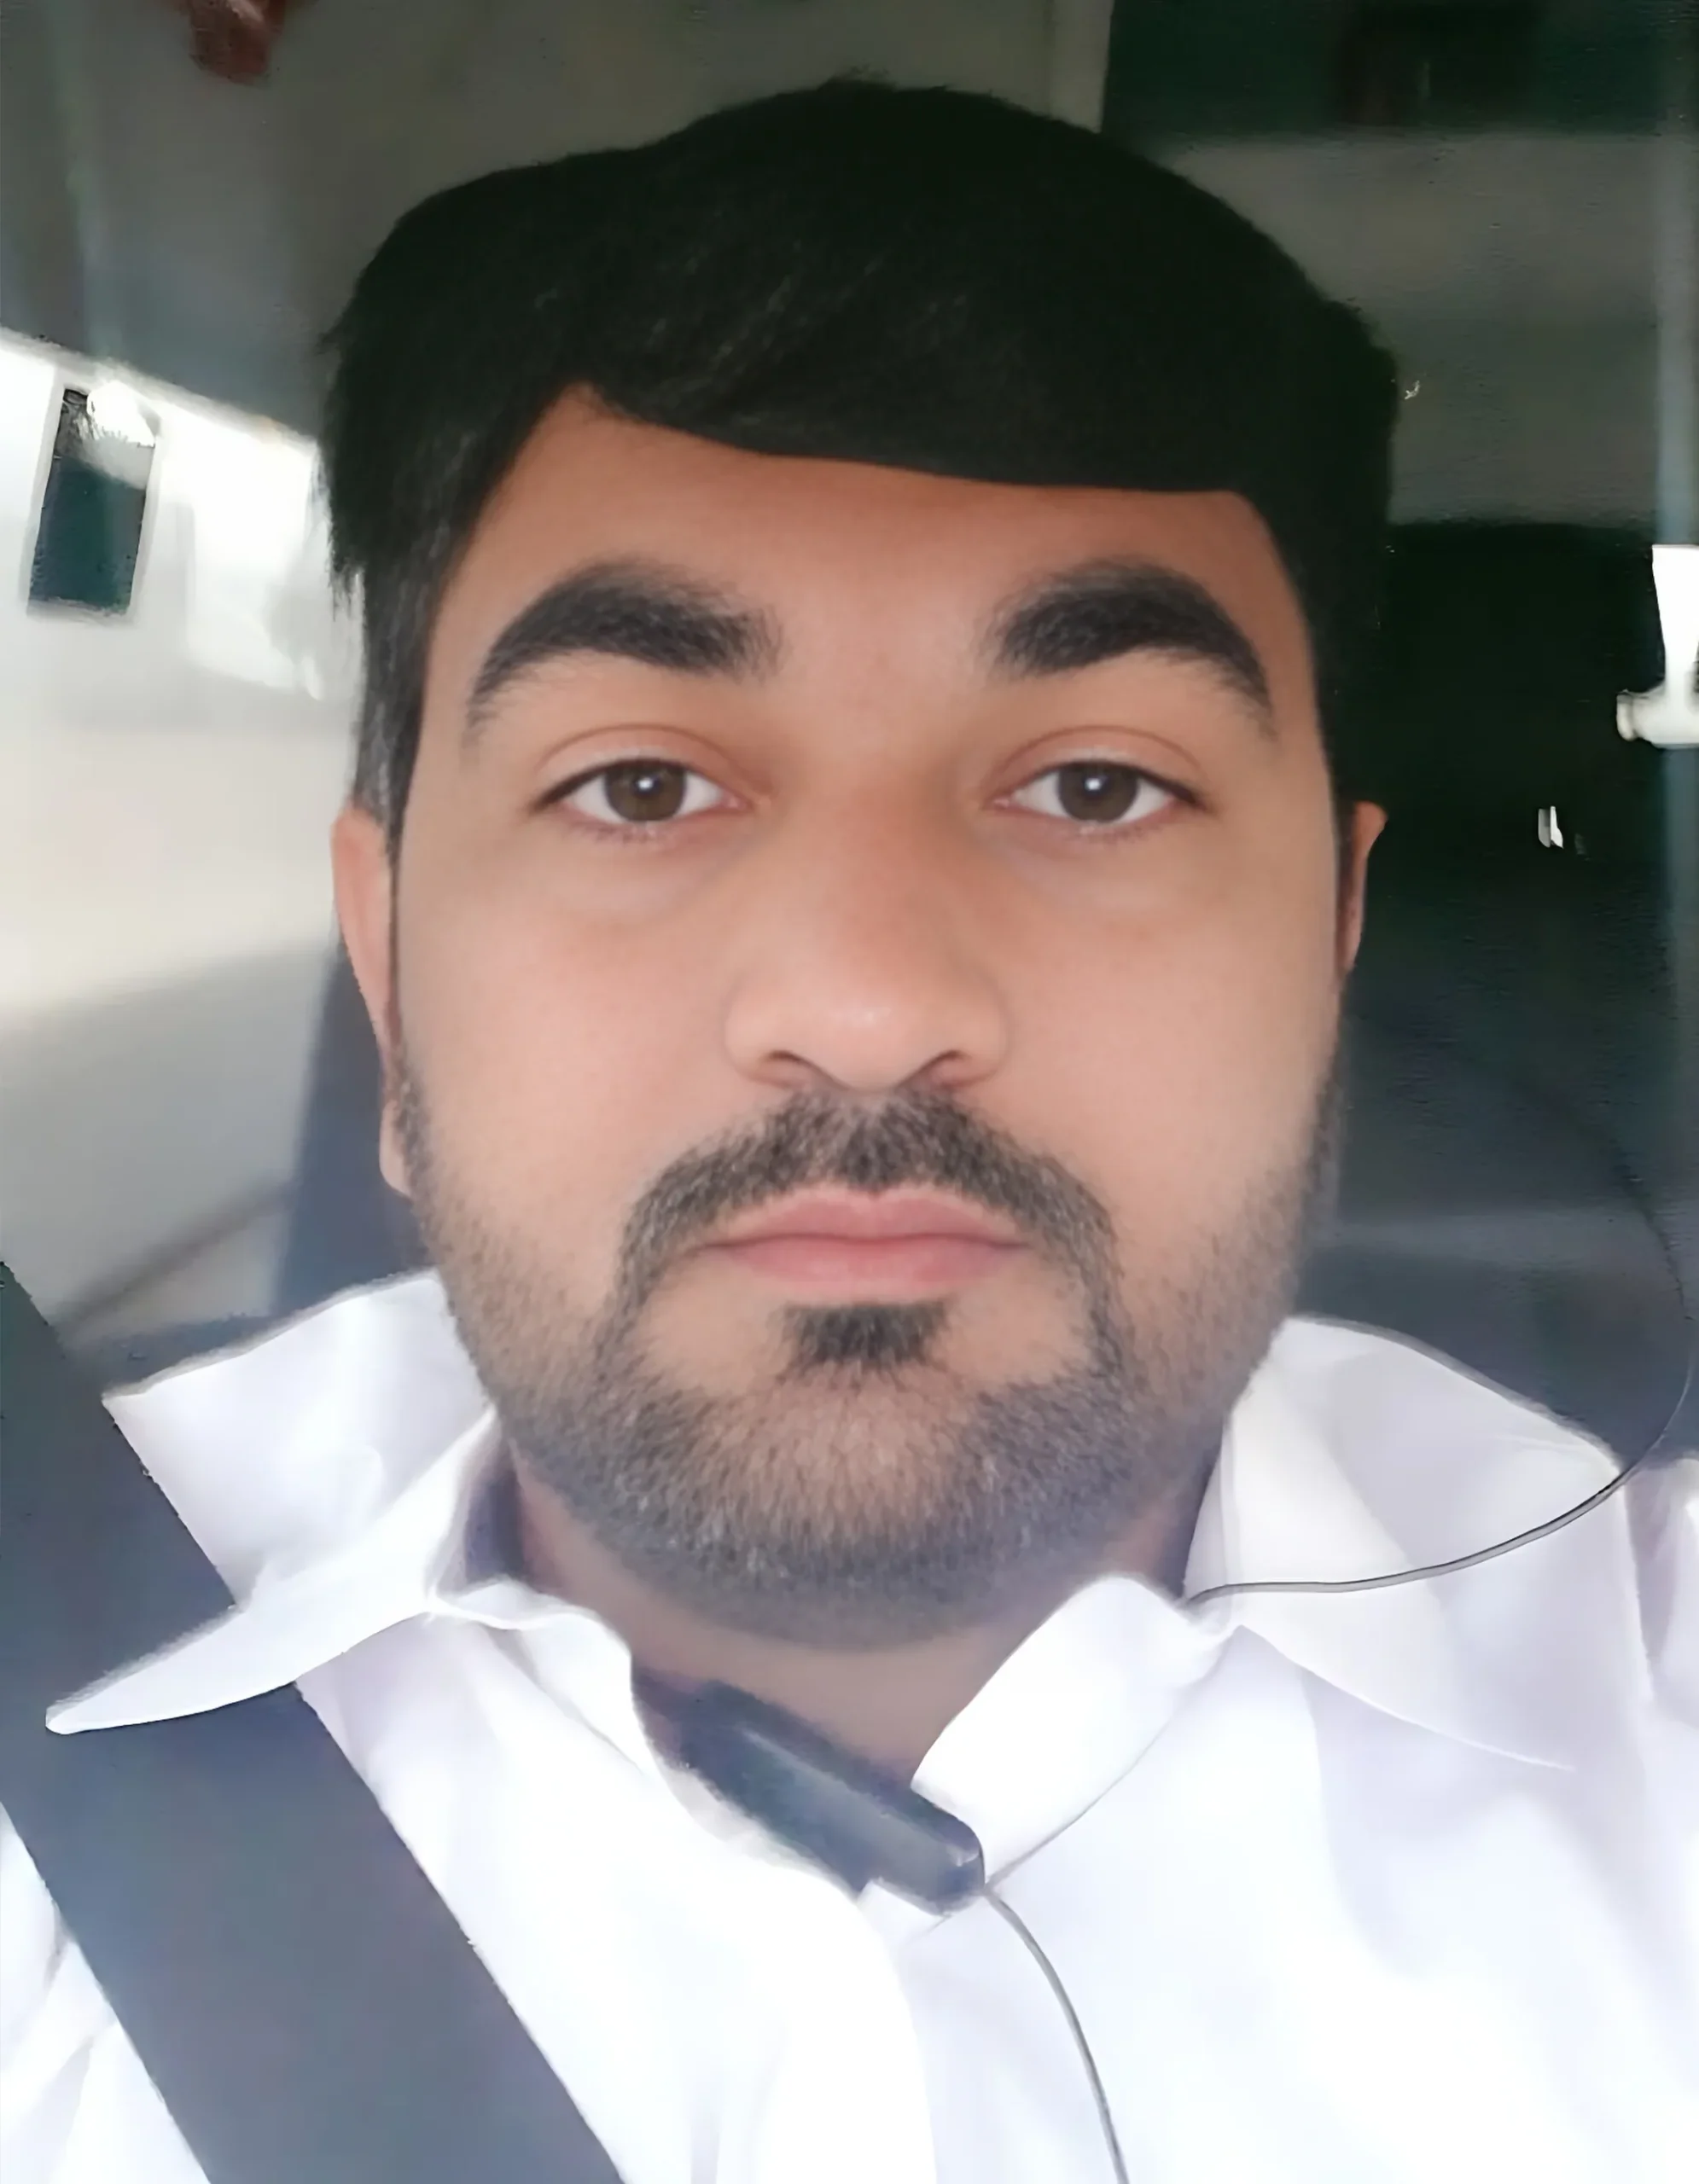 Umrah Taxi Online - Taxi Service Jeddah Makkah And Madinah.